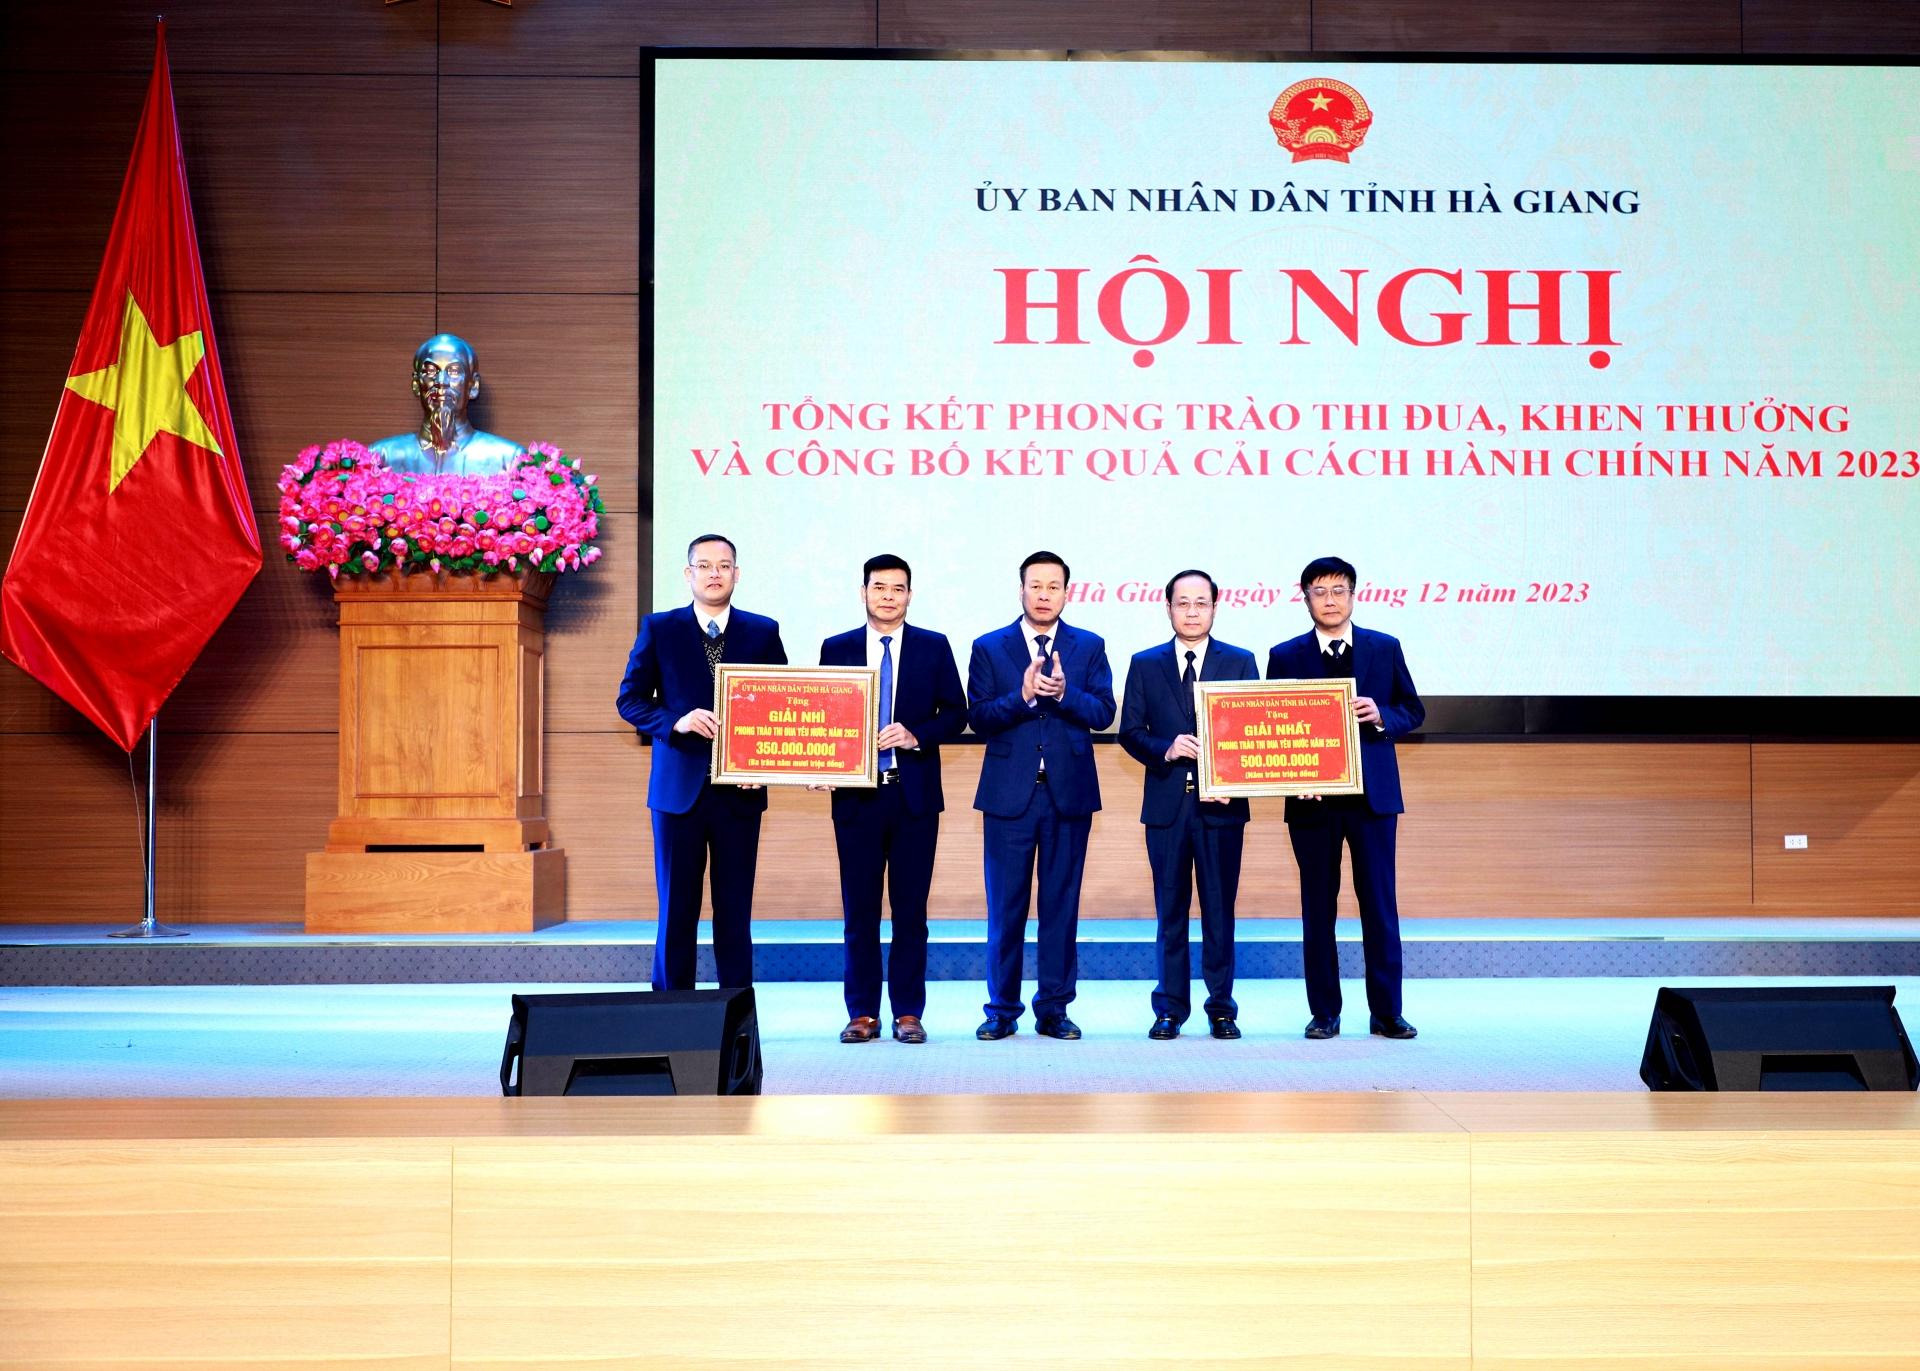 Phó Bí thư Tỉnh ủy, Chủ tịch UBND tỉnh Nguyễn Văn Sơn tặng thưởng cho huyện Bắc Quang đơn vị đạt giải Nhất; huyện Quang Bình đạt giải Nhì phong trào thi đua năm 2023.